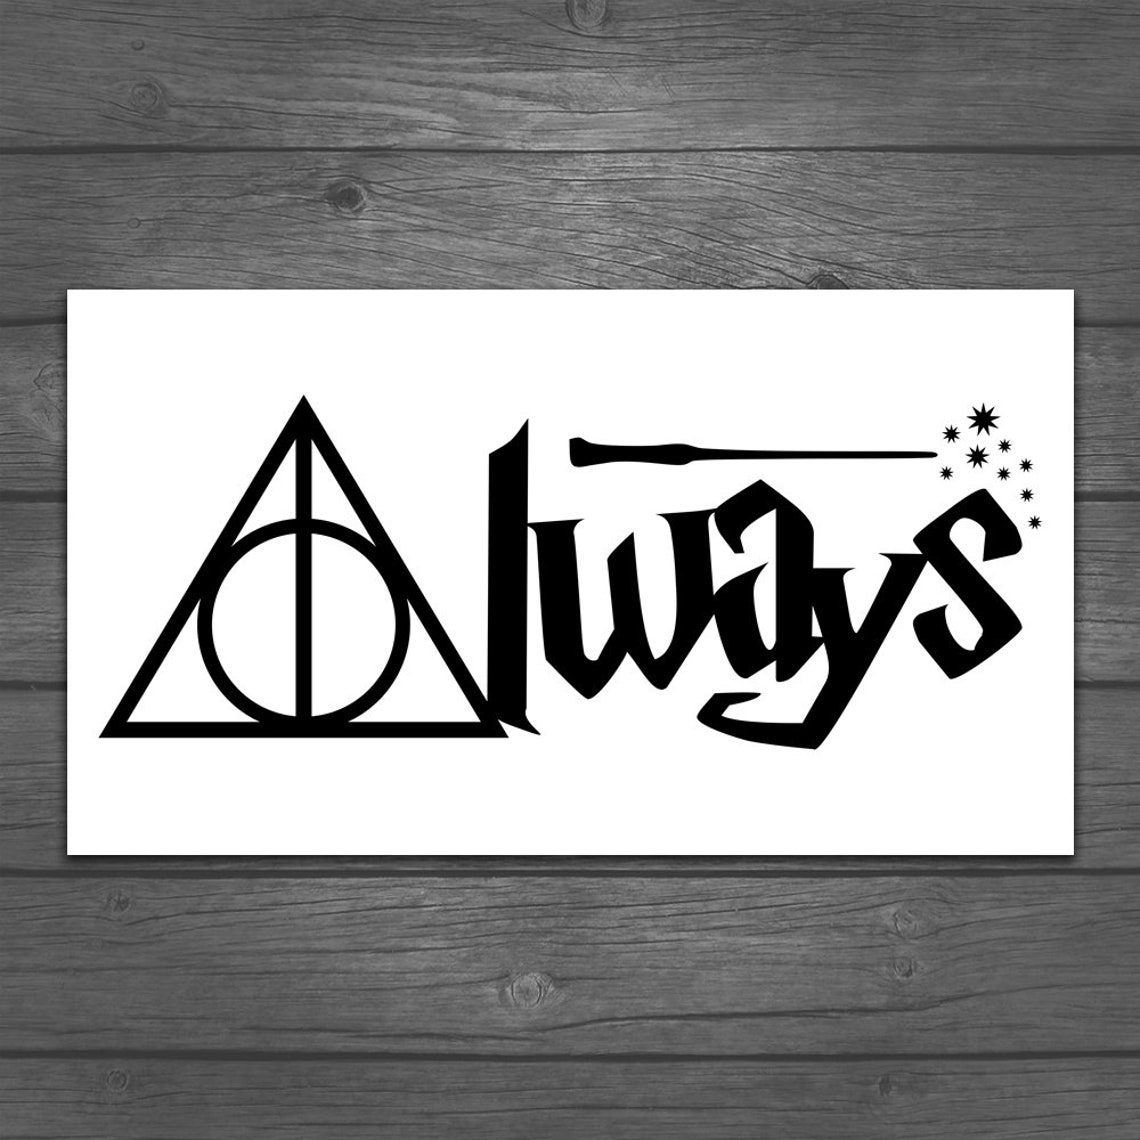 Always Harry Potter Vinyl Decal | Etsy